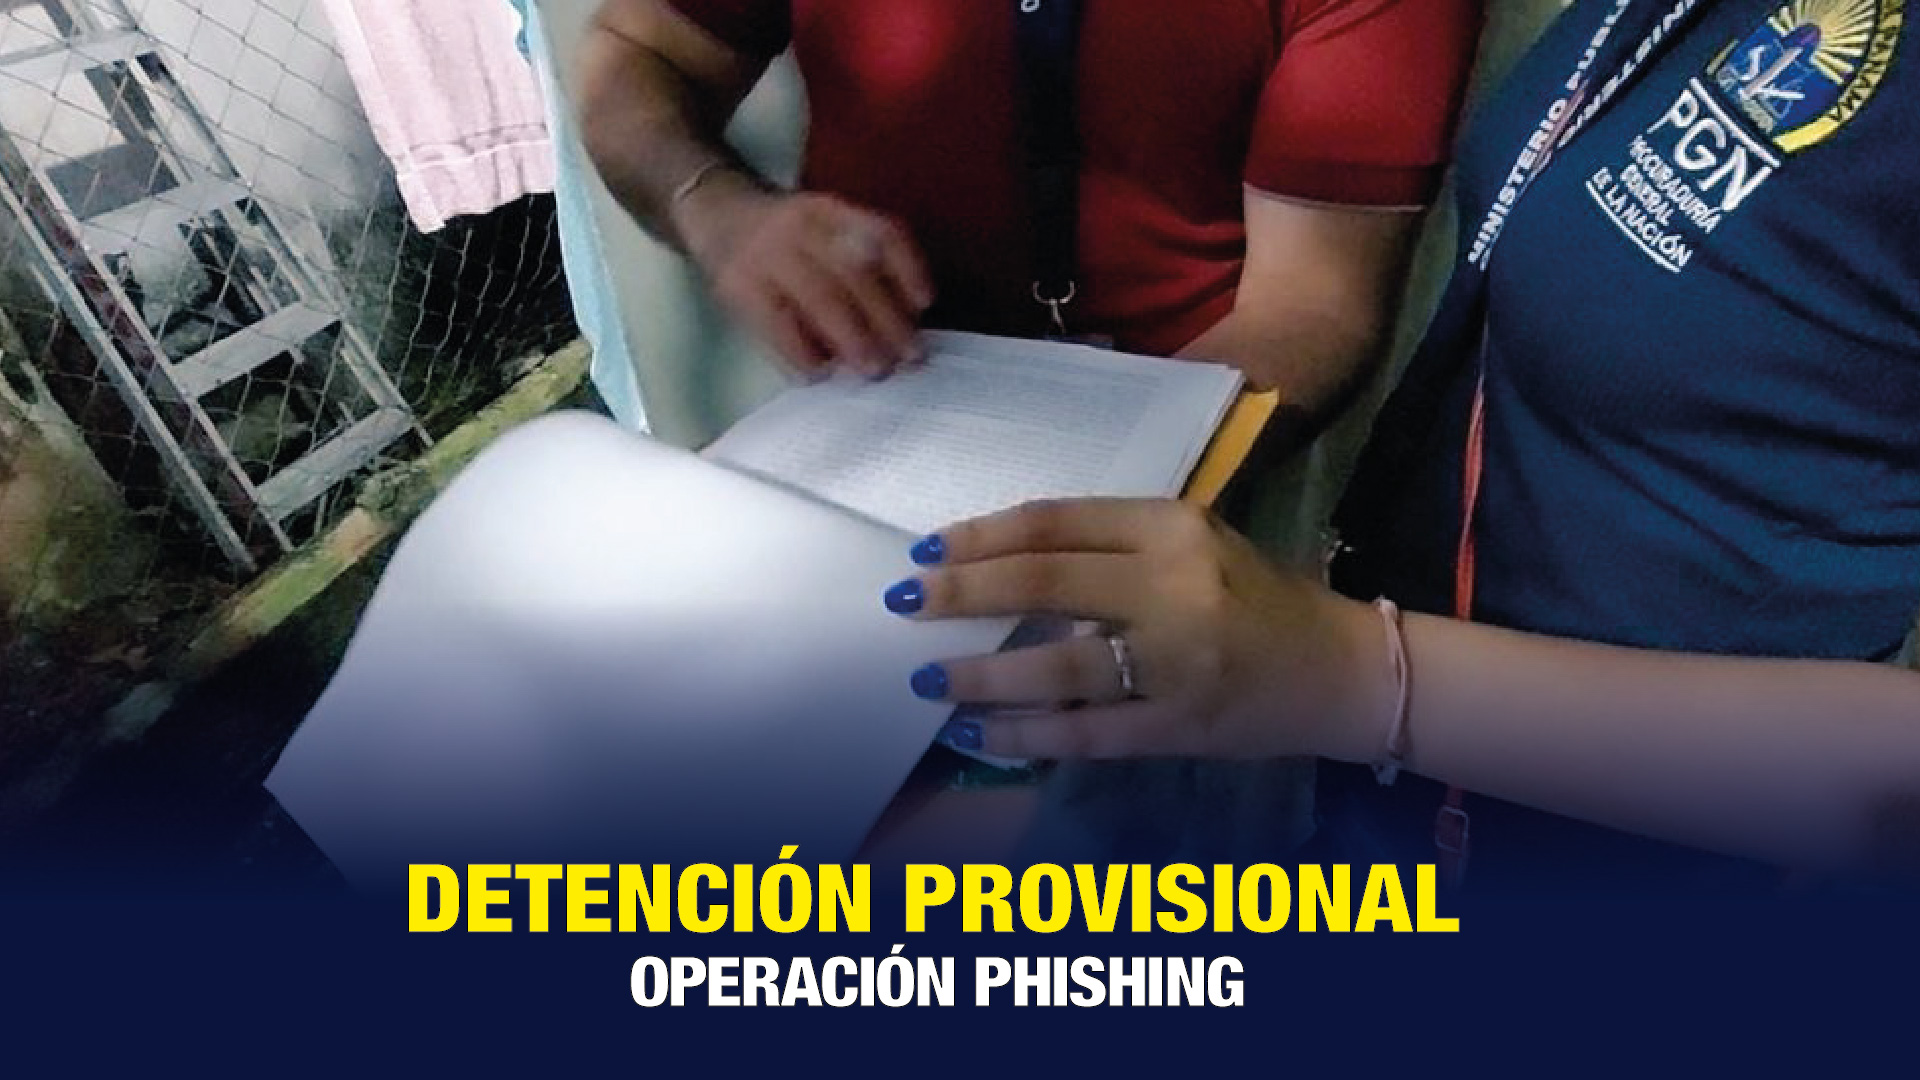 Decretan la detención provisional a una persona aprehendida en operación “Phishing”